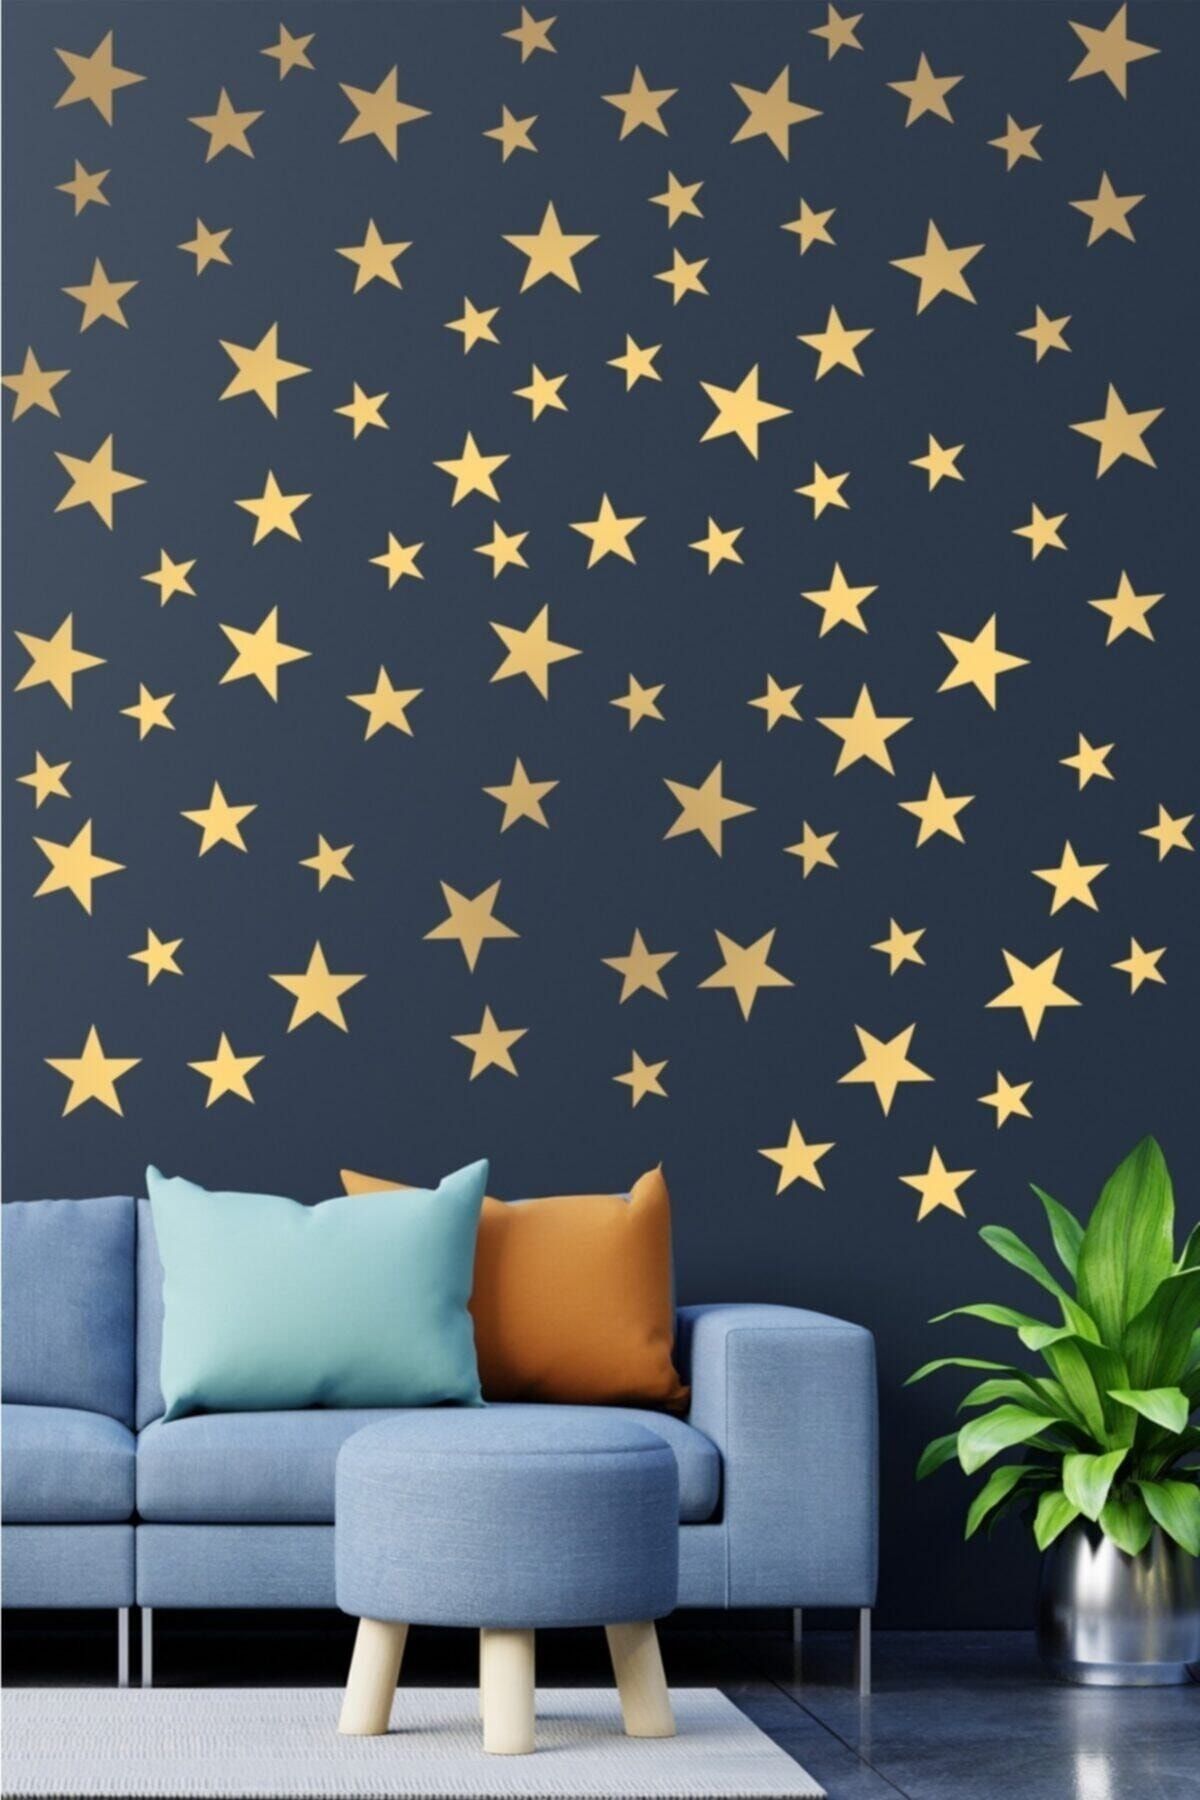 Kt Grup Çocuk Bebek Odası 200 Adet Metalize Altın Rengi Yıldız Dekoratif Duvar Sticker